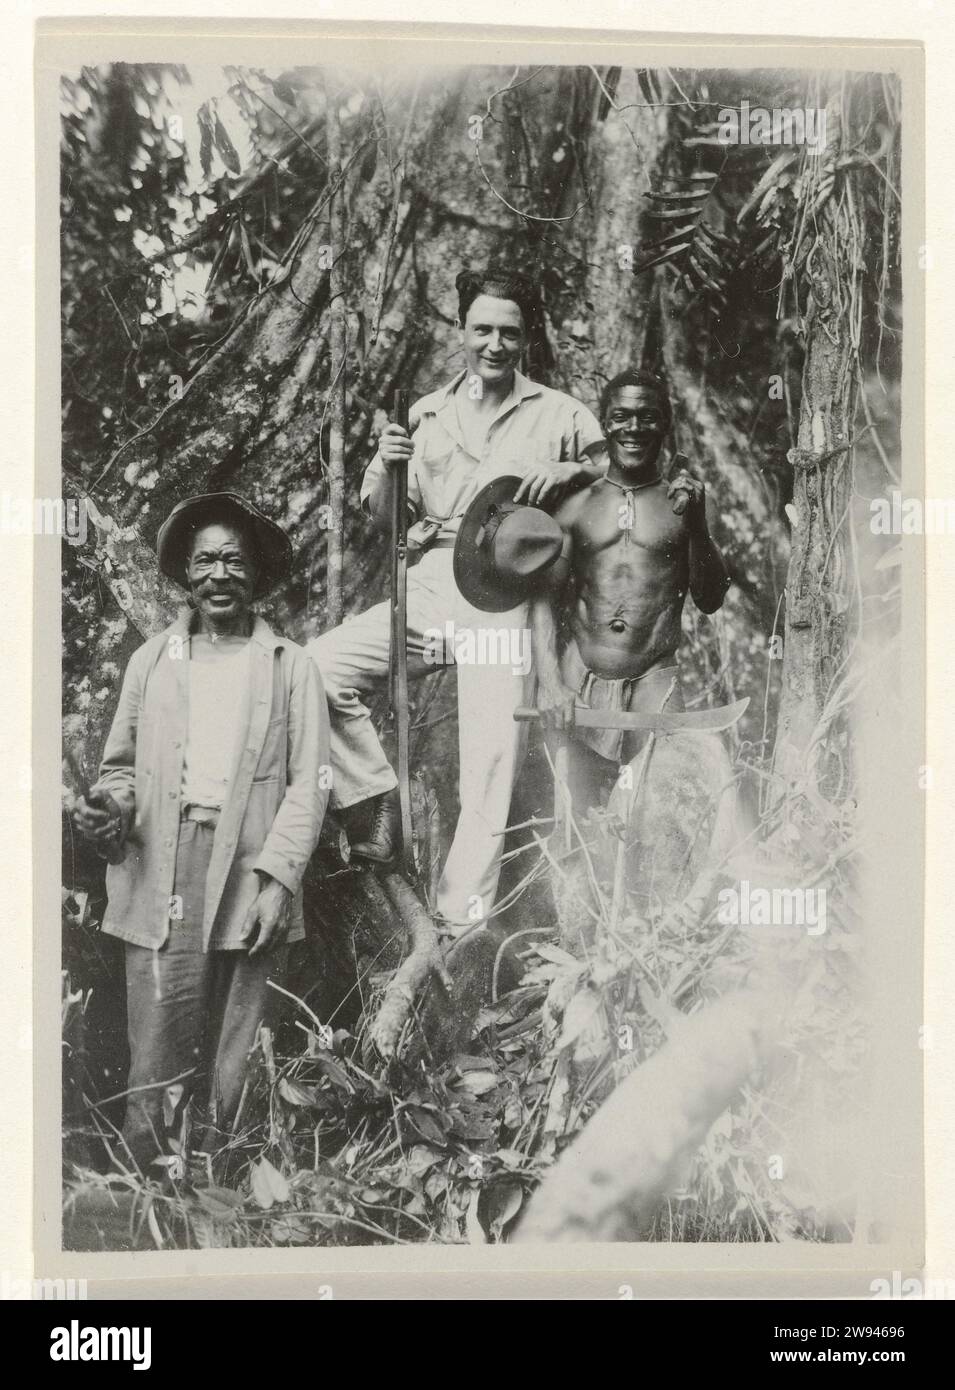 Mr. Guilonard posiert mit zwei Surinamen im Inneren von Suriname, 1929 - 1930 Foto Suriname fotografische Unterstützung Moengo. Albina Stockfoto